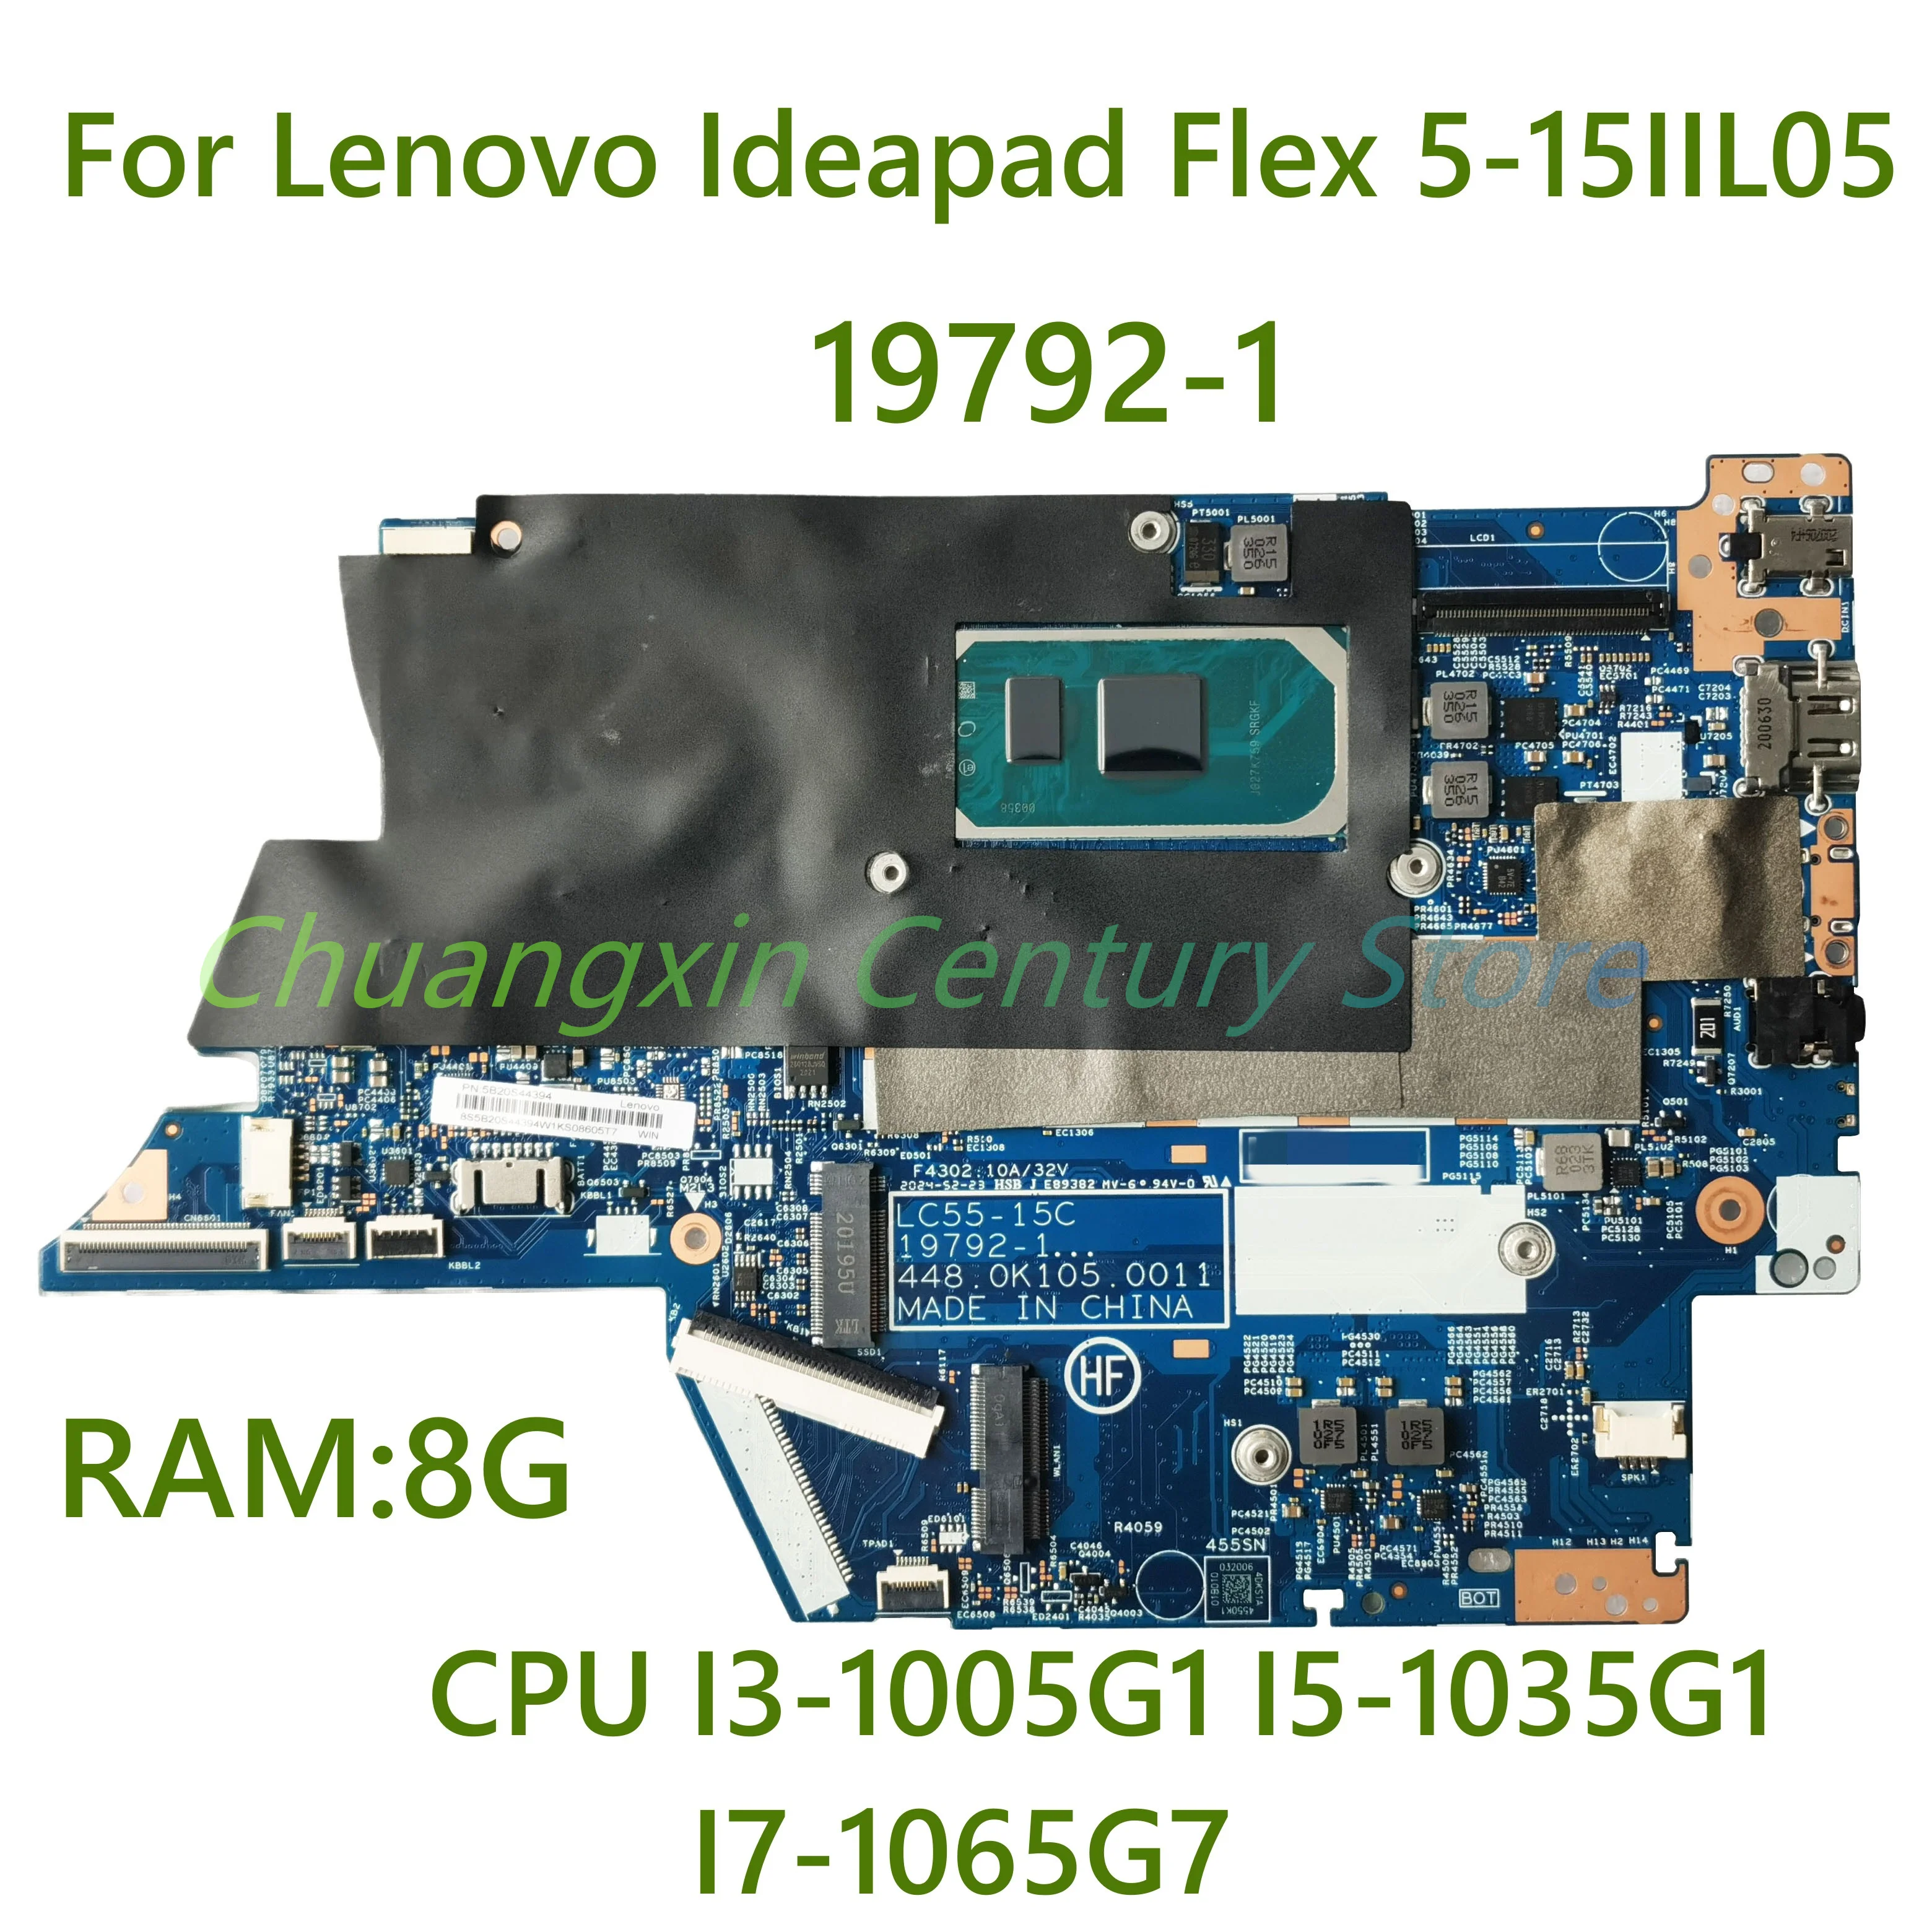 

LC55-15C 19792-1 для Lenovo Ideapad Flex 5-15IIL05 материнская плата для ноутбука с искусственным процессором, проверено 8 ГБ ОЗУ